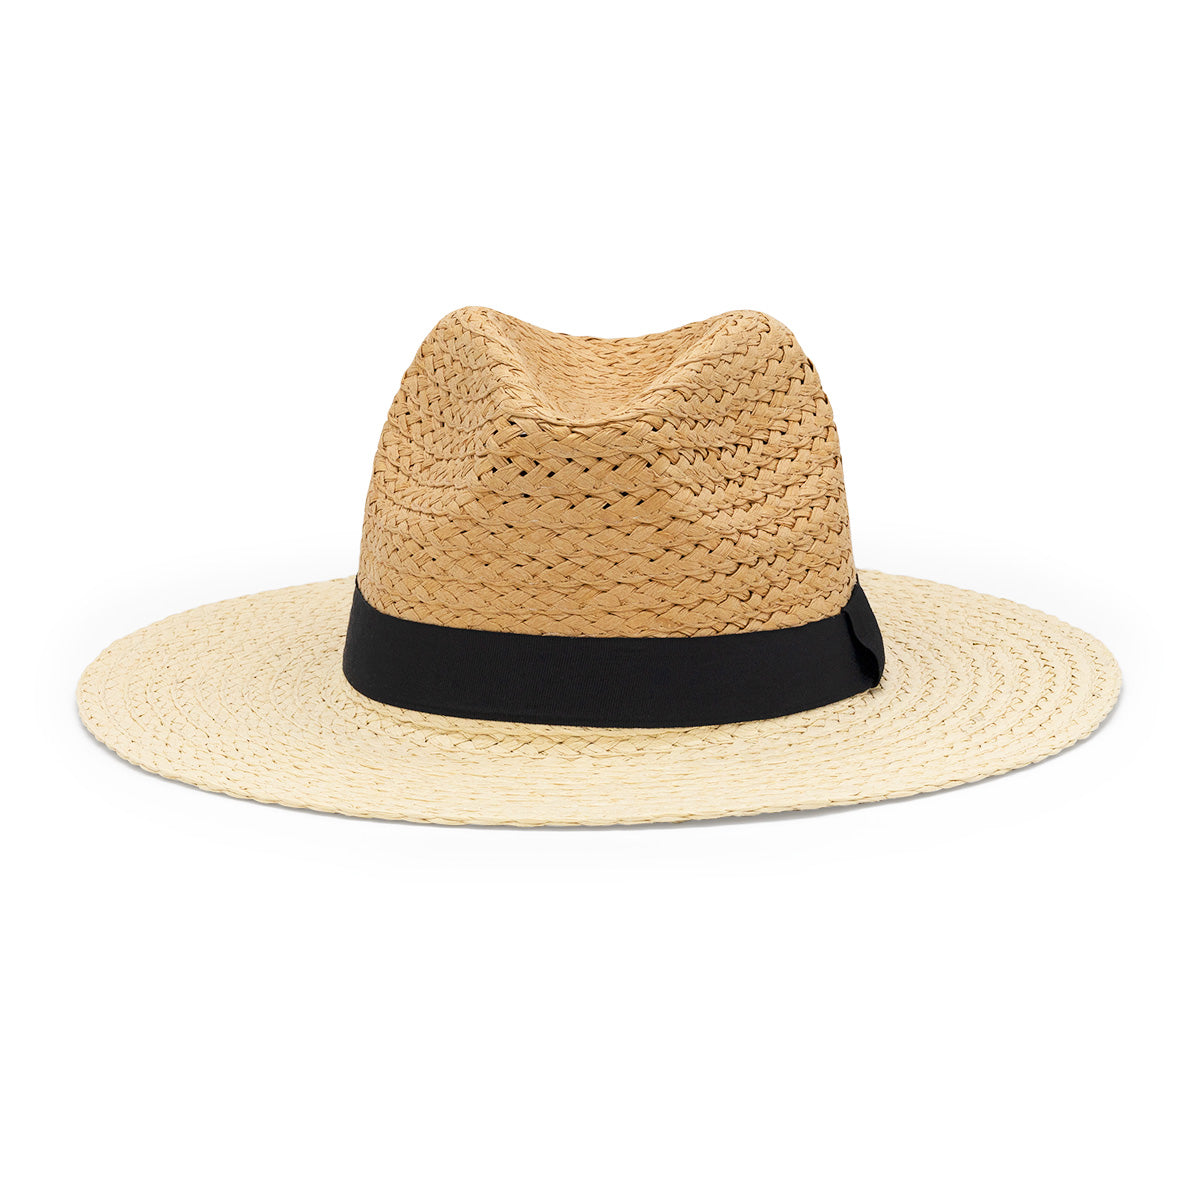 Costa Rica Hat in